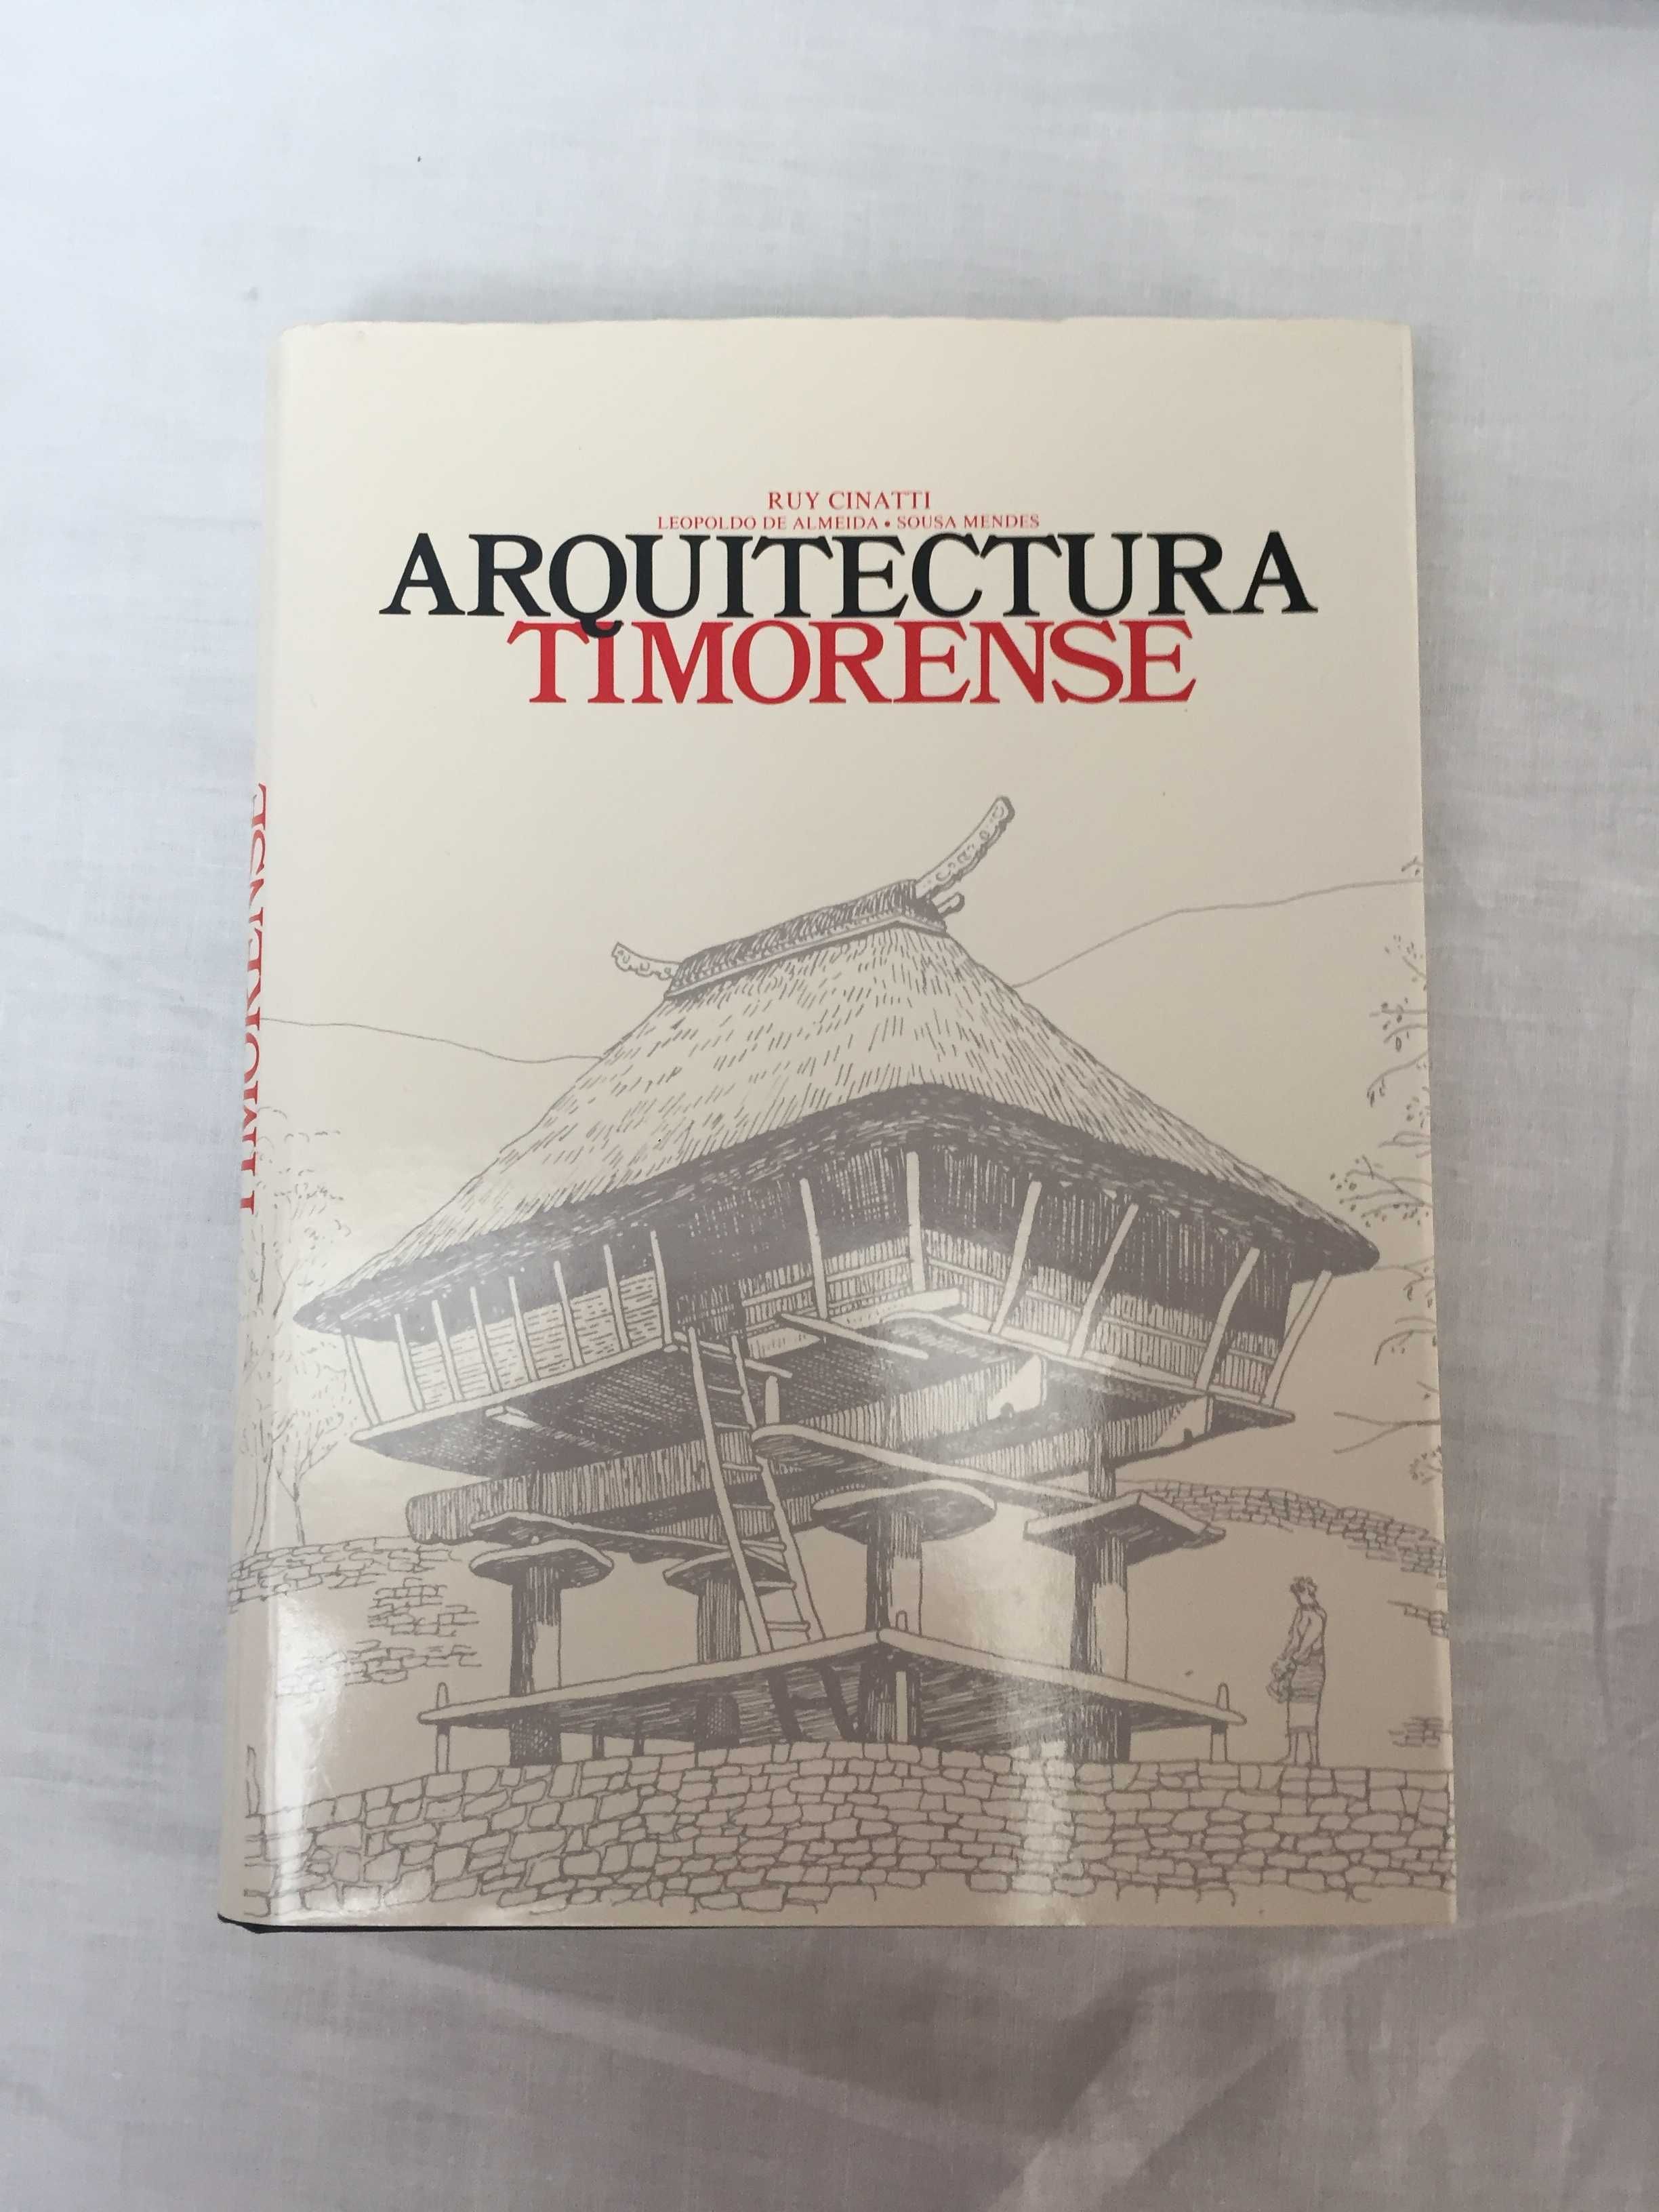 1ª edição do Livro "Arquitetura Timorense" de Ruy Cinatti